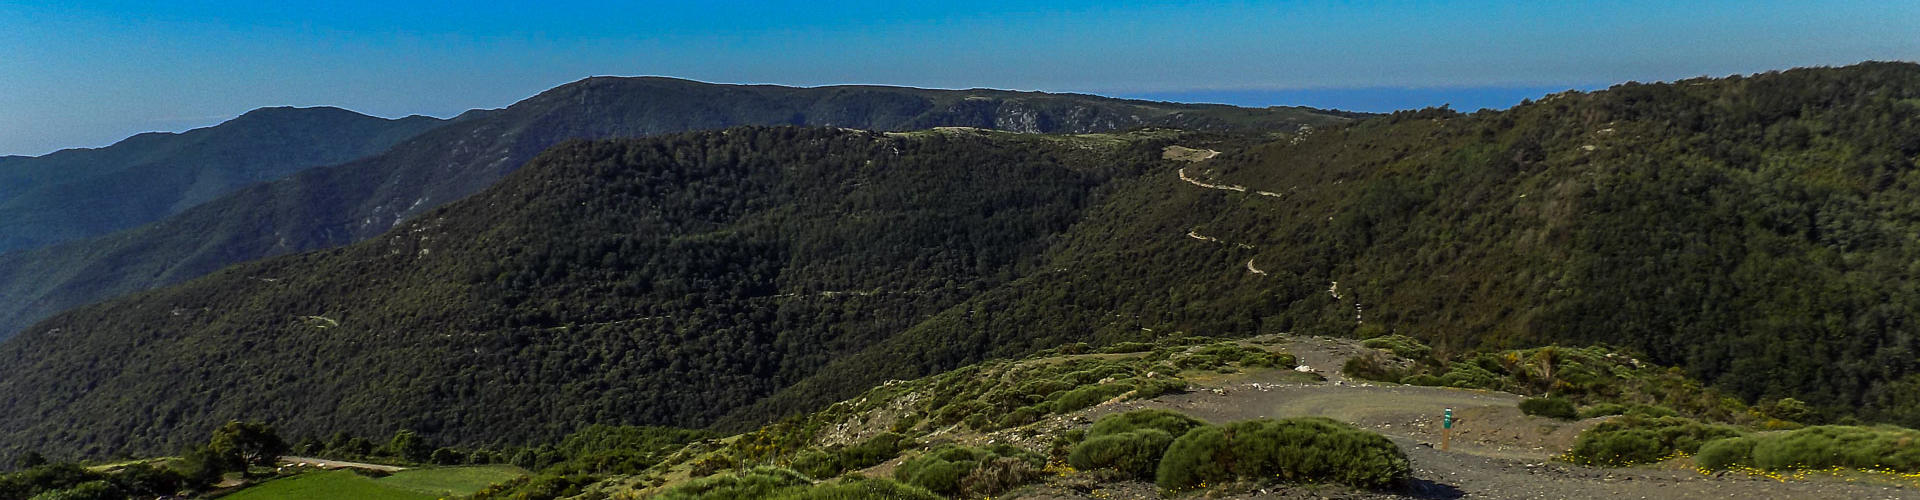 El Puig Ventós i el pla de la Calma des dels vessants del Matagalls